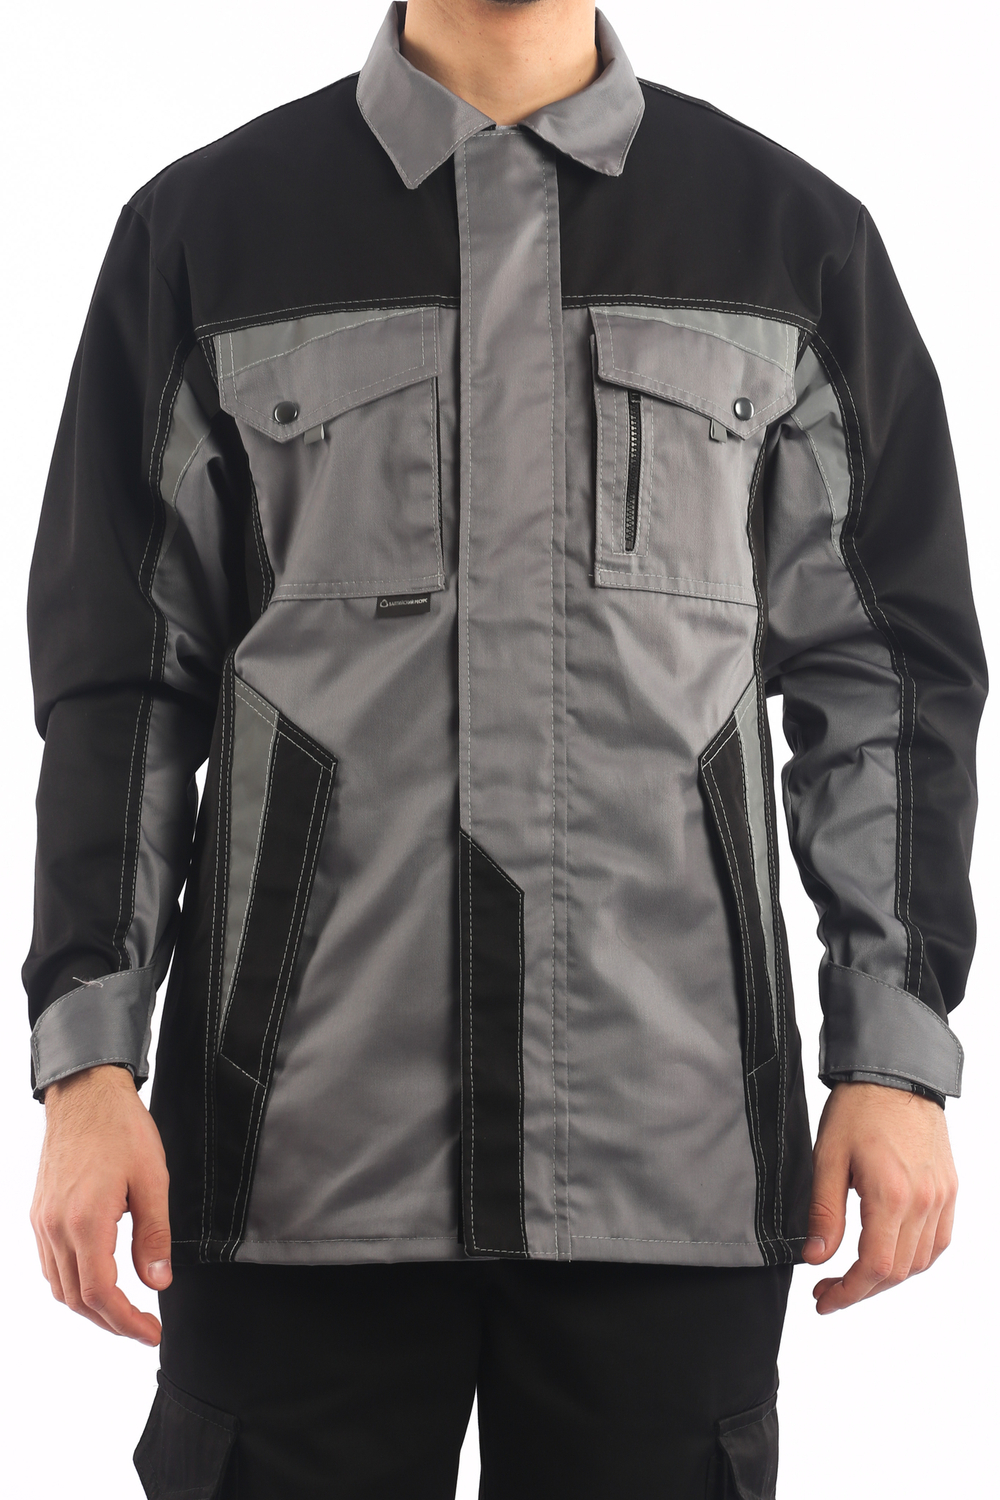 Куртка мужская летняя «Ультра», серая/черная ткань 245 г/м